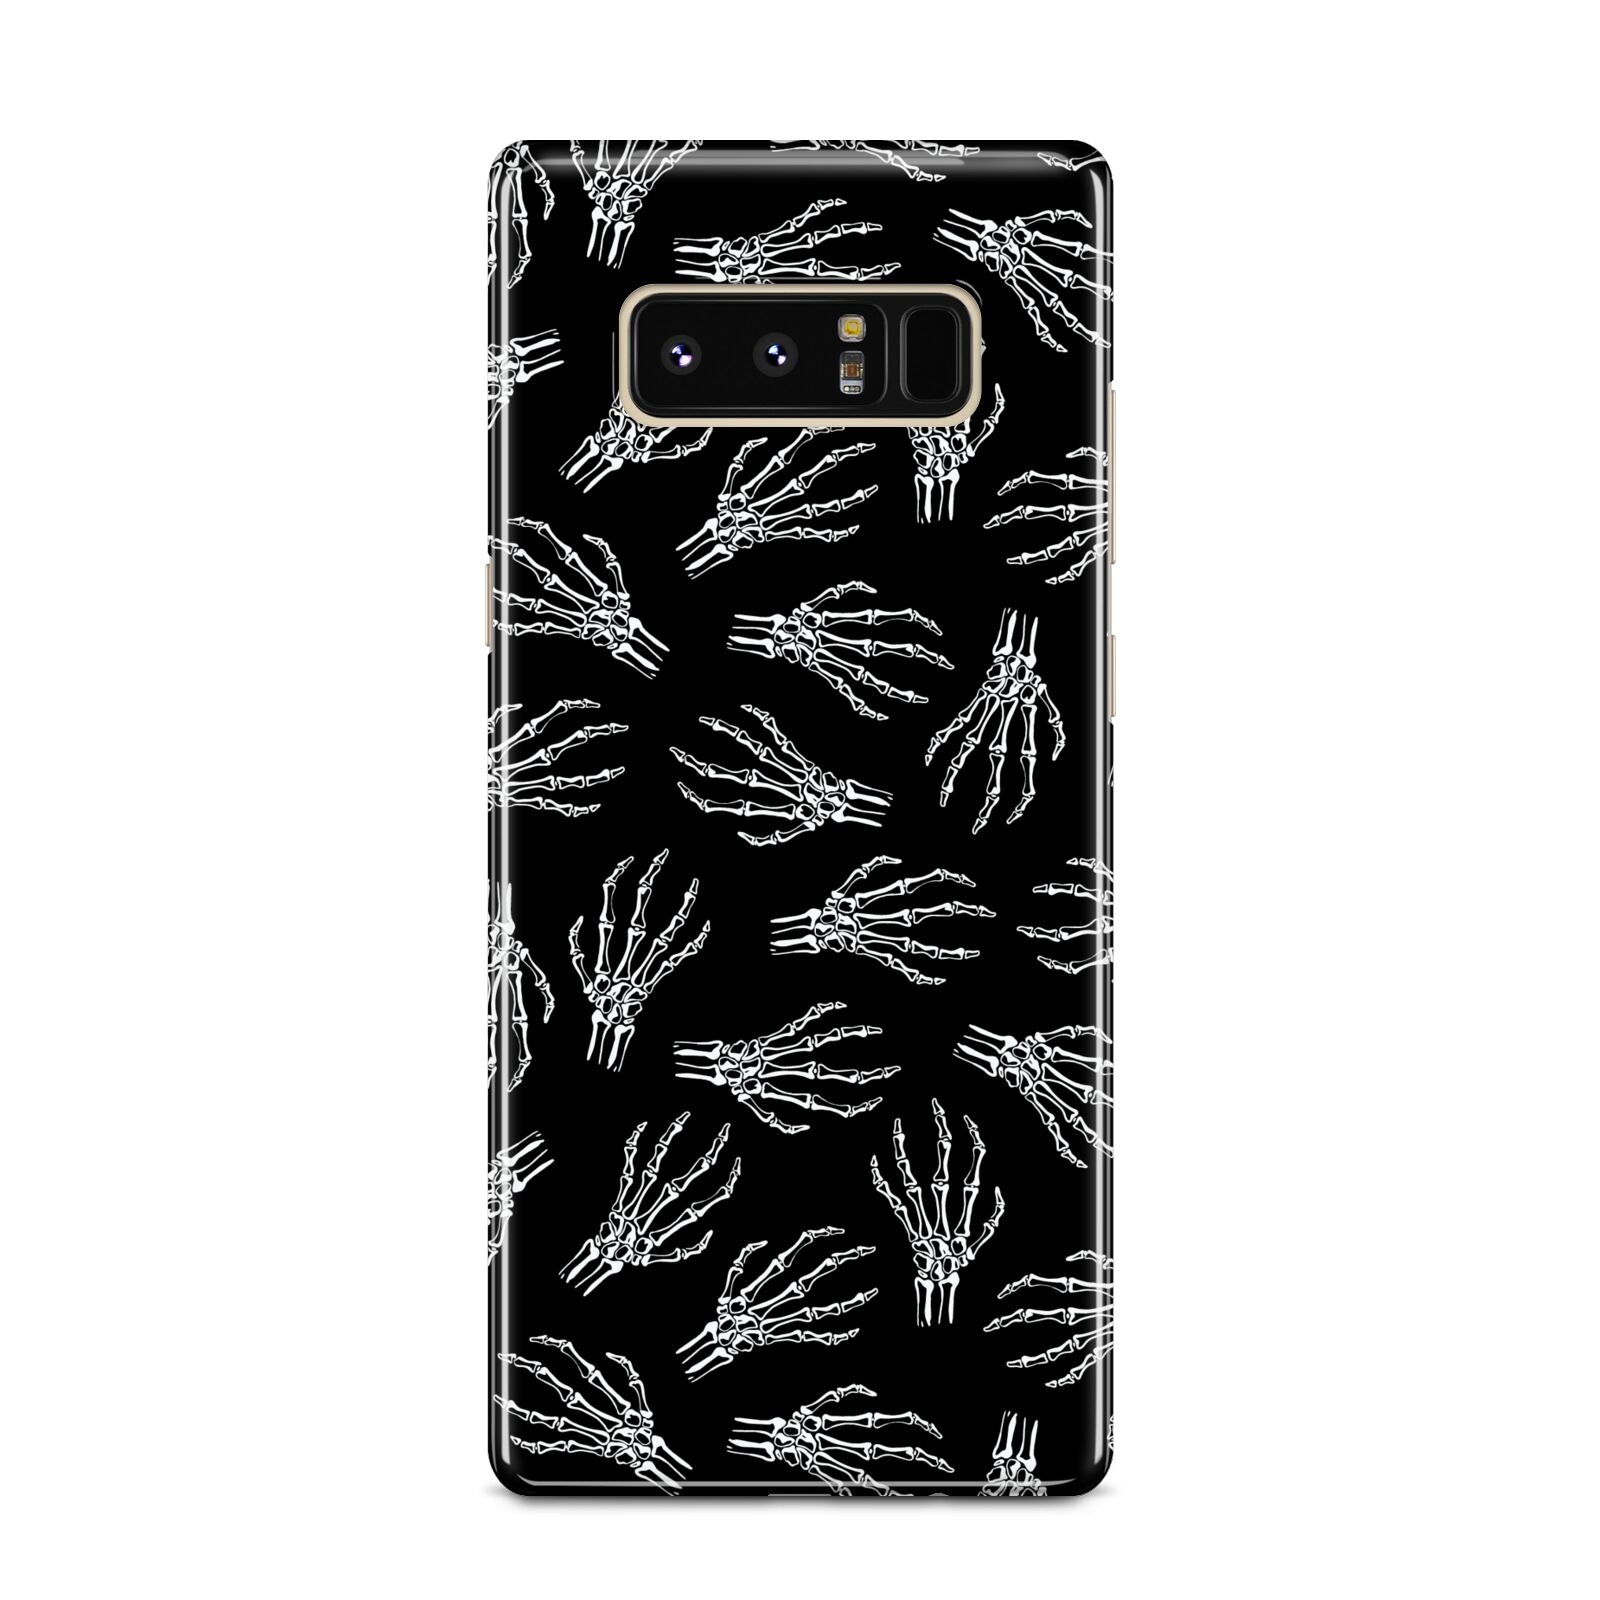 Skeleton Hands Samsung Galaxy Note 8 Case